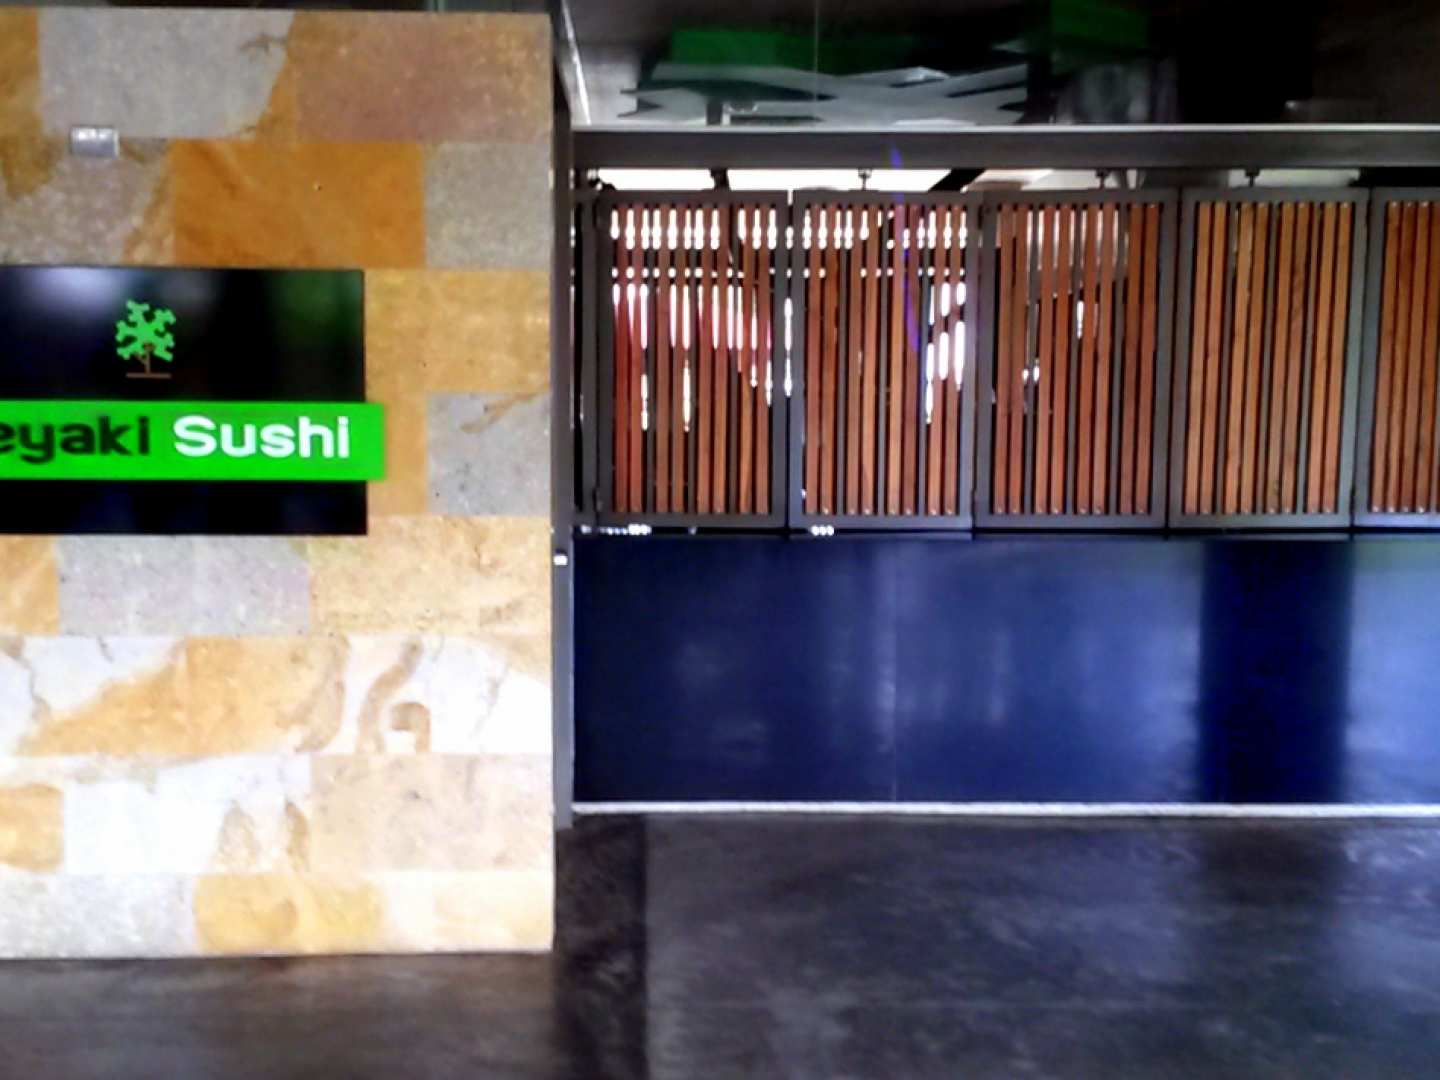 Keyaki Sushi